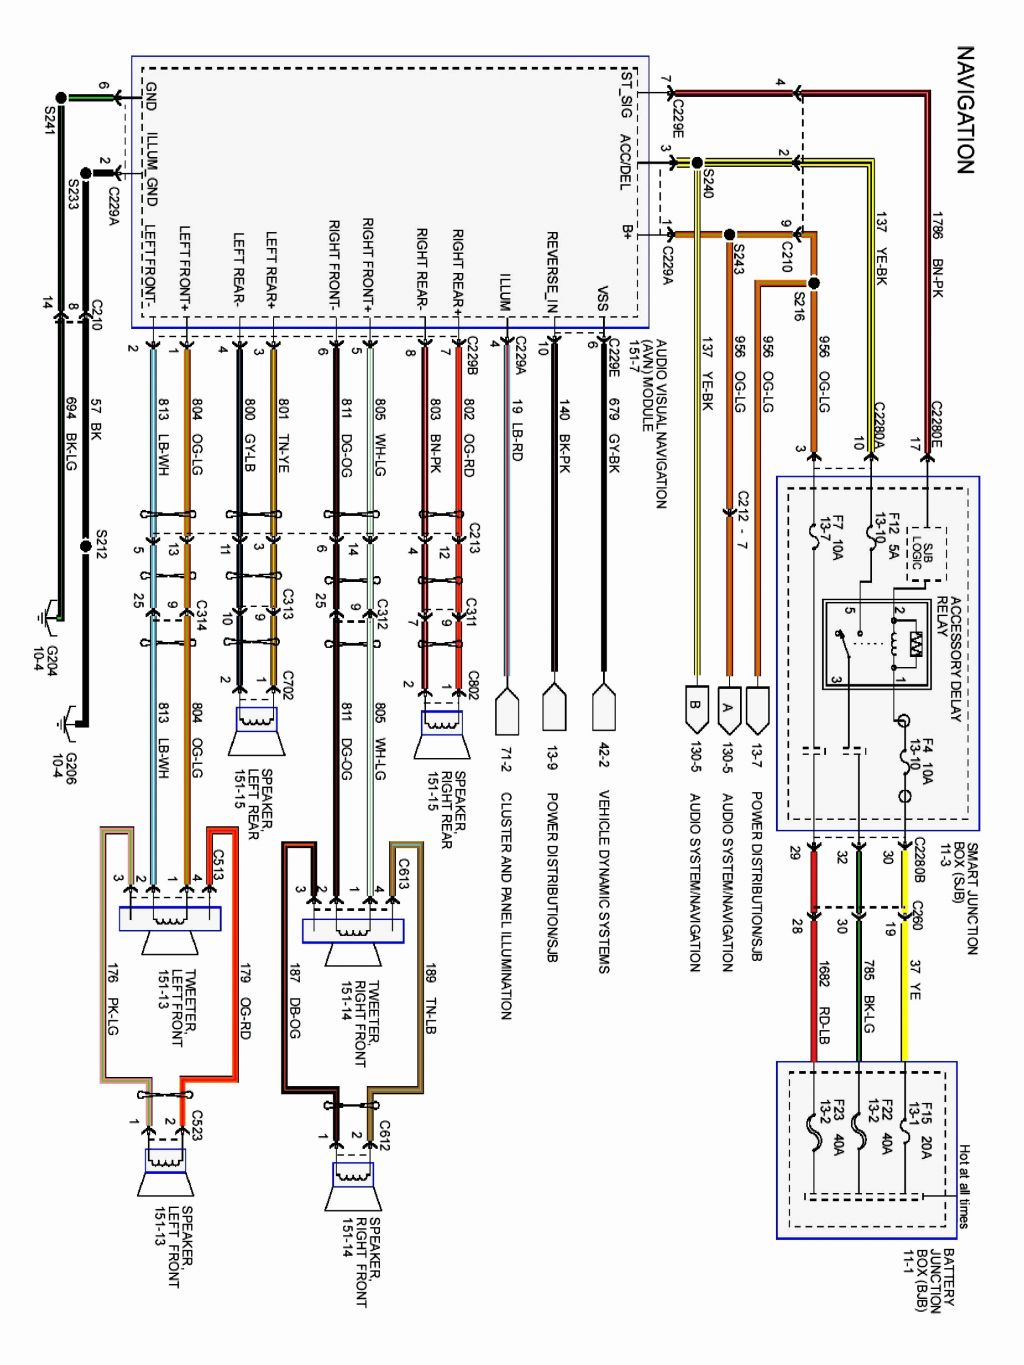 Ford Radio Wiring Diagram Download - Free Wiring Diagram